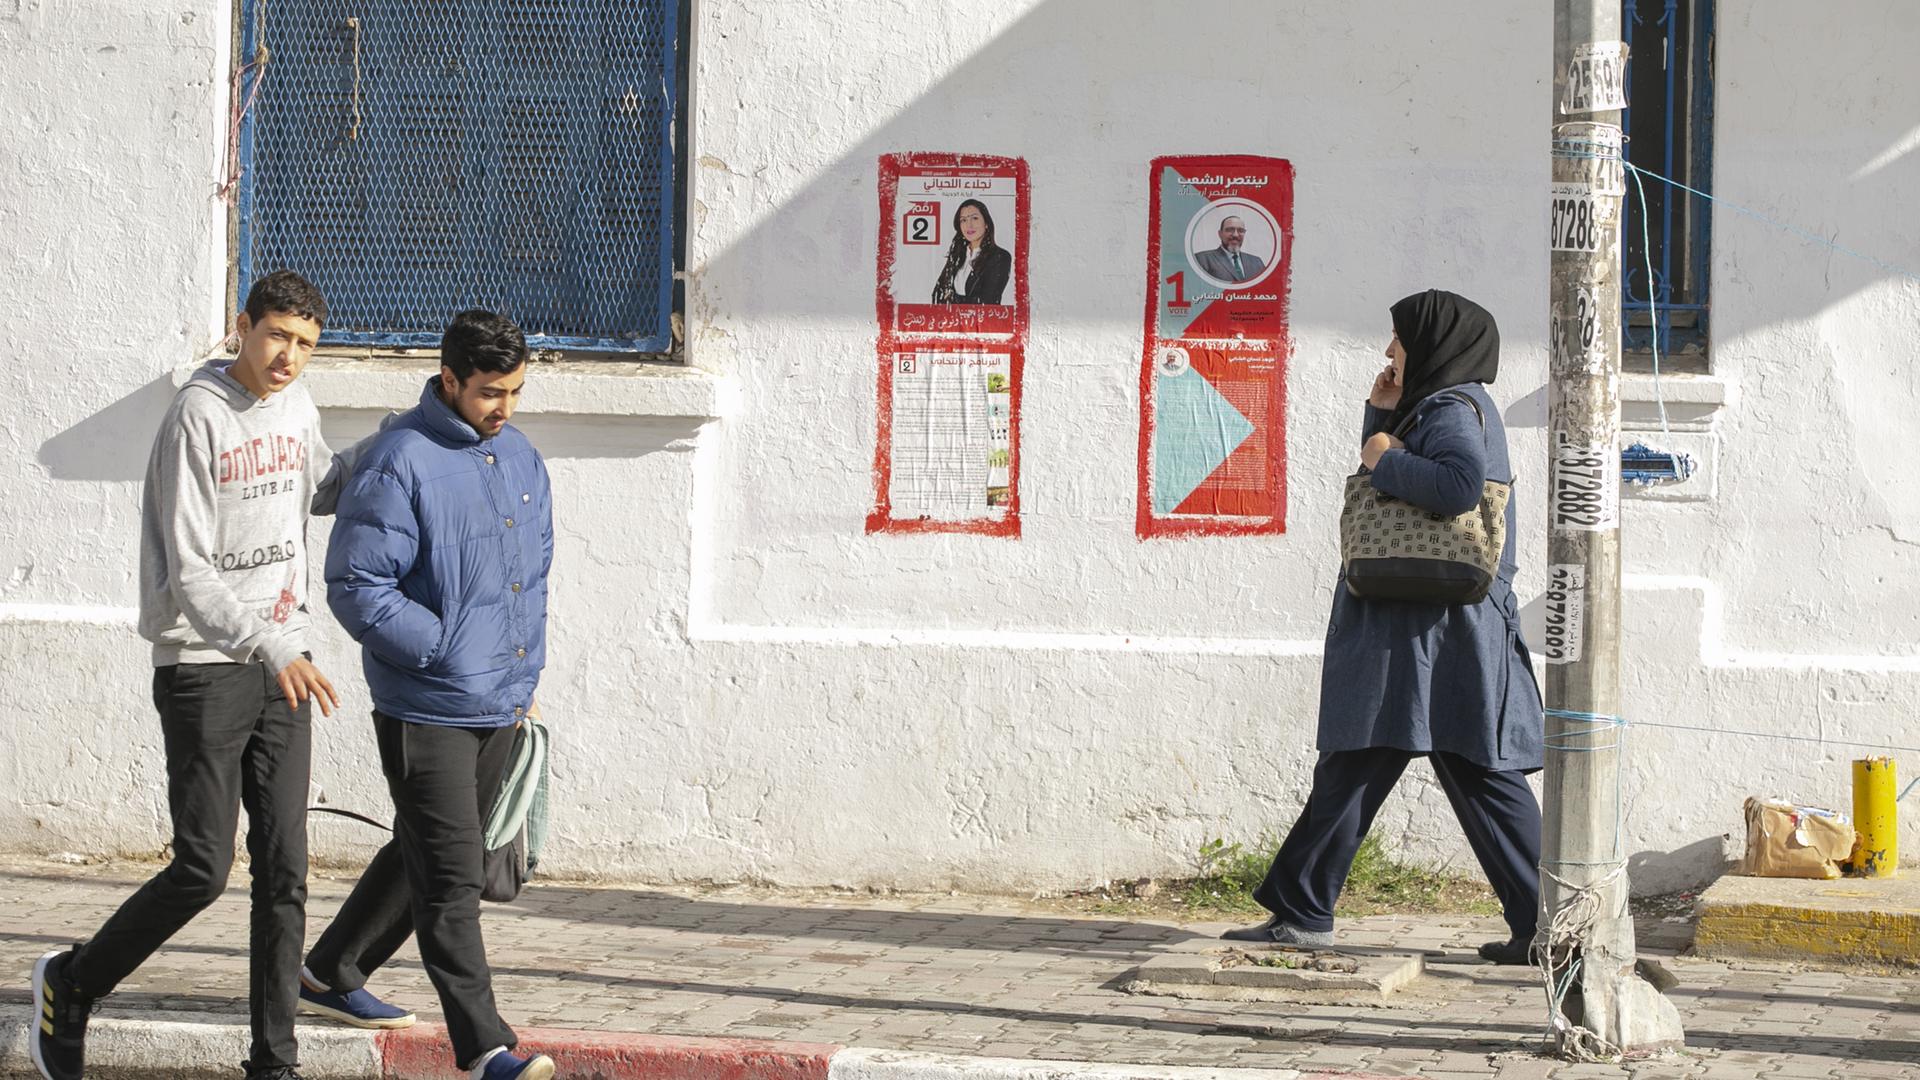 FUßgänger gehen an Wahlplakaten in Tunis vorbi. 